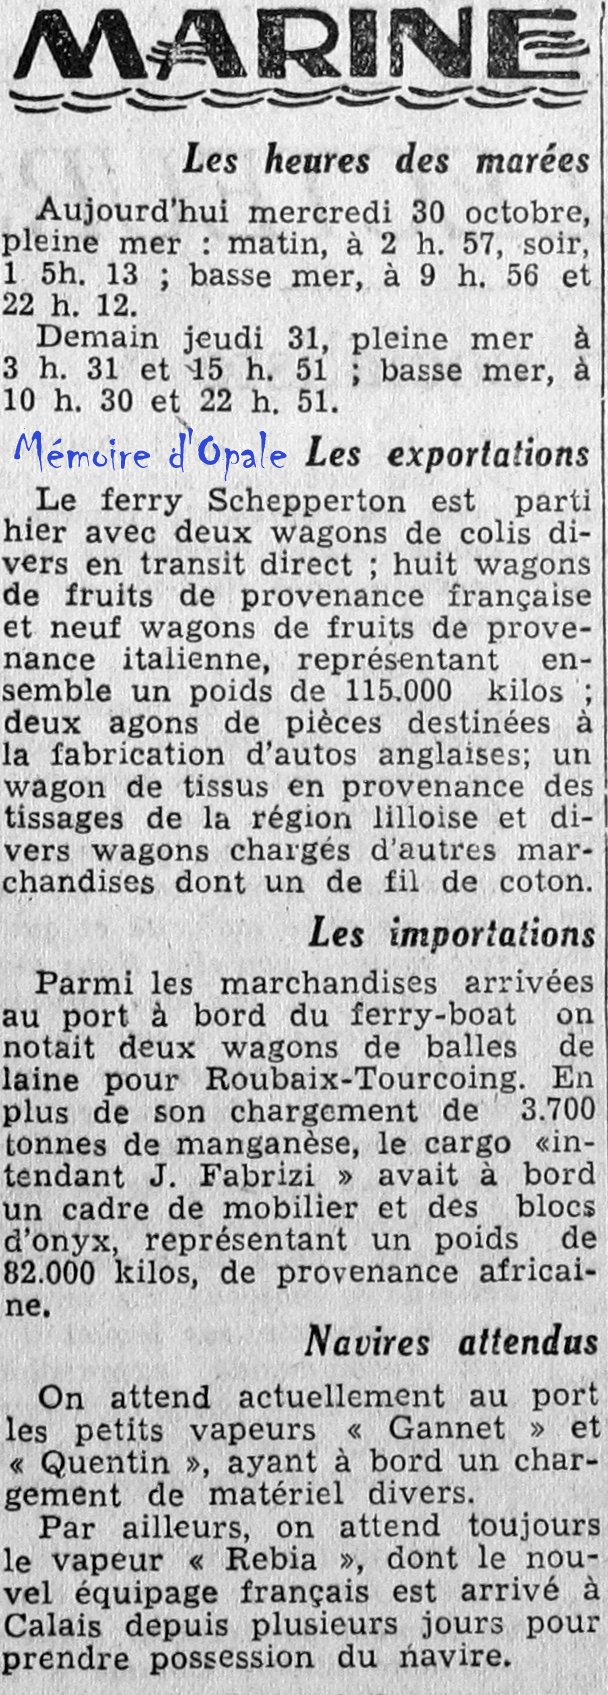 La Voix du Nord – 1946 – Photos Alain ÉVRARD pour Mémoire d’Opale - Page 38 La_v1459